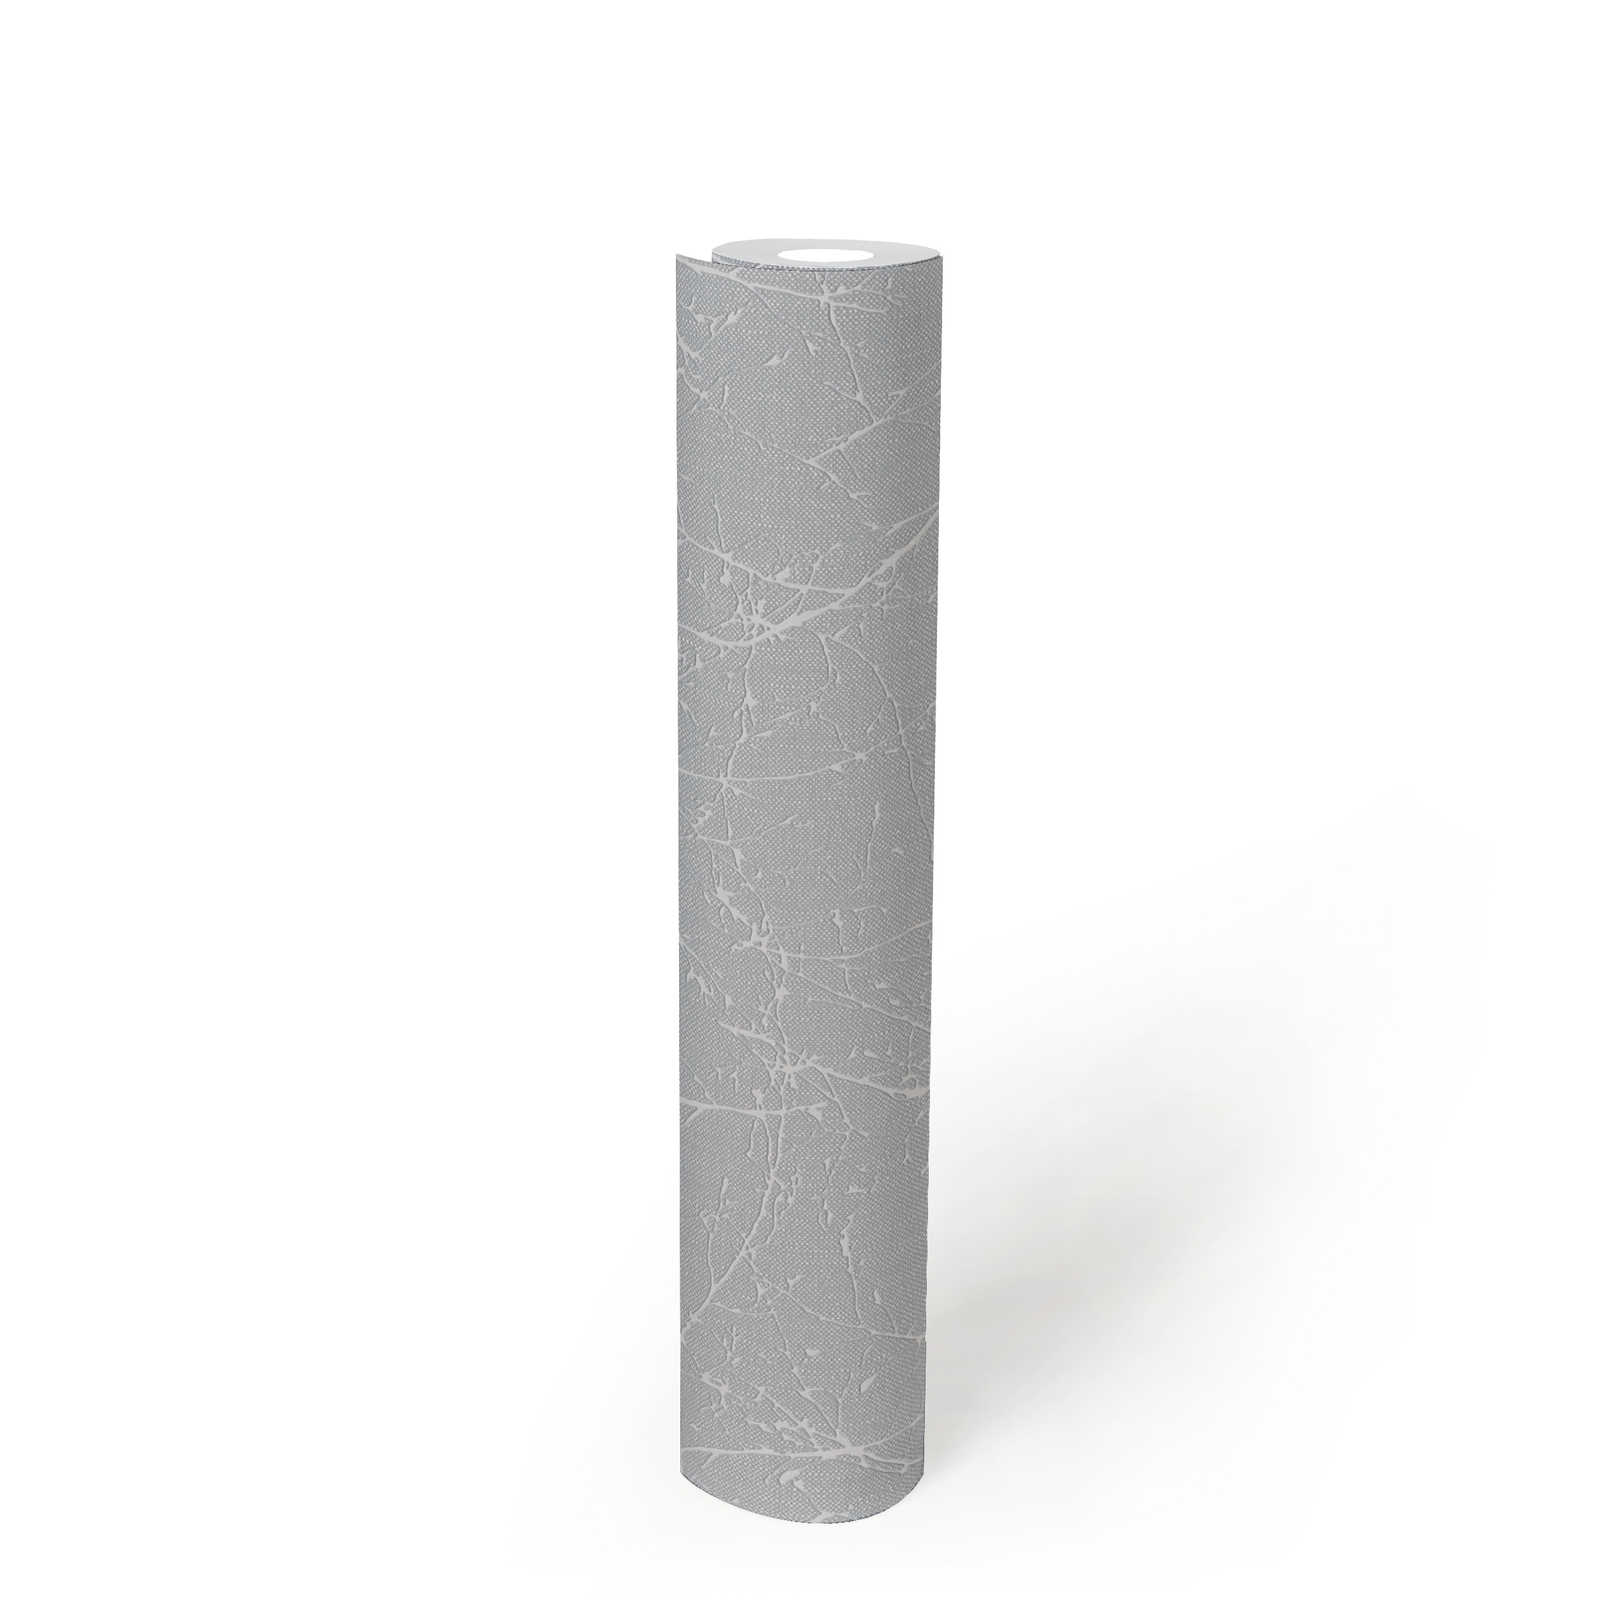             Papel pintado de tejido no tejido con motivos de ramas y estructura ligera - gris claro, blanco
        